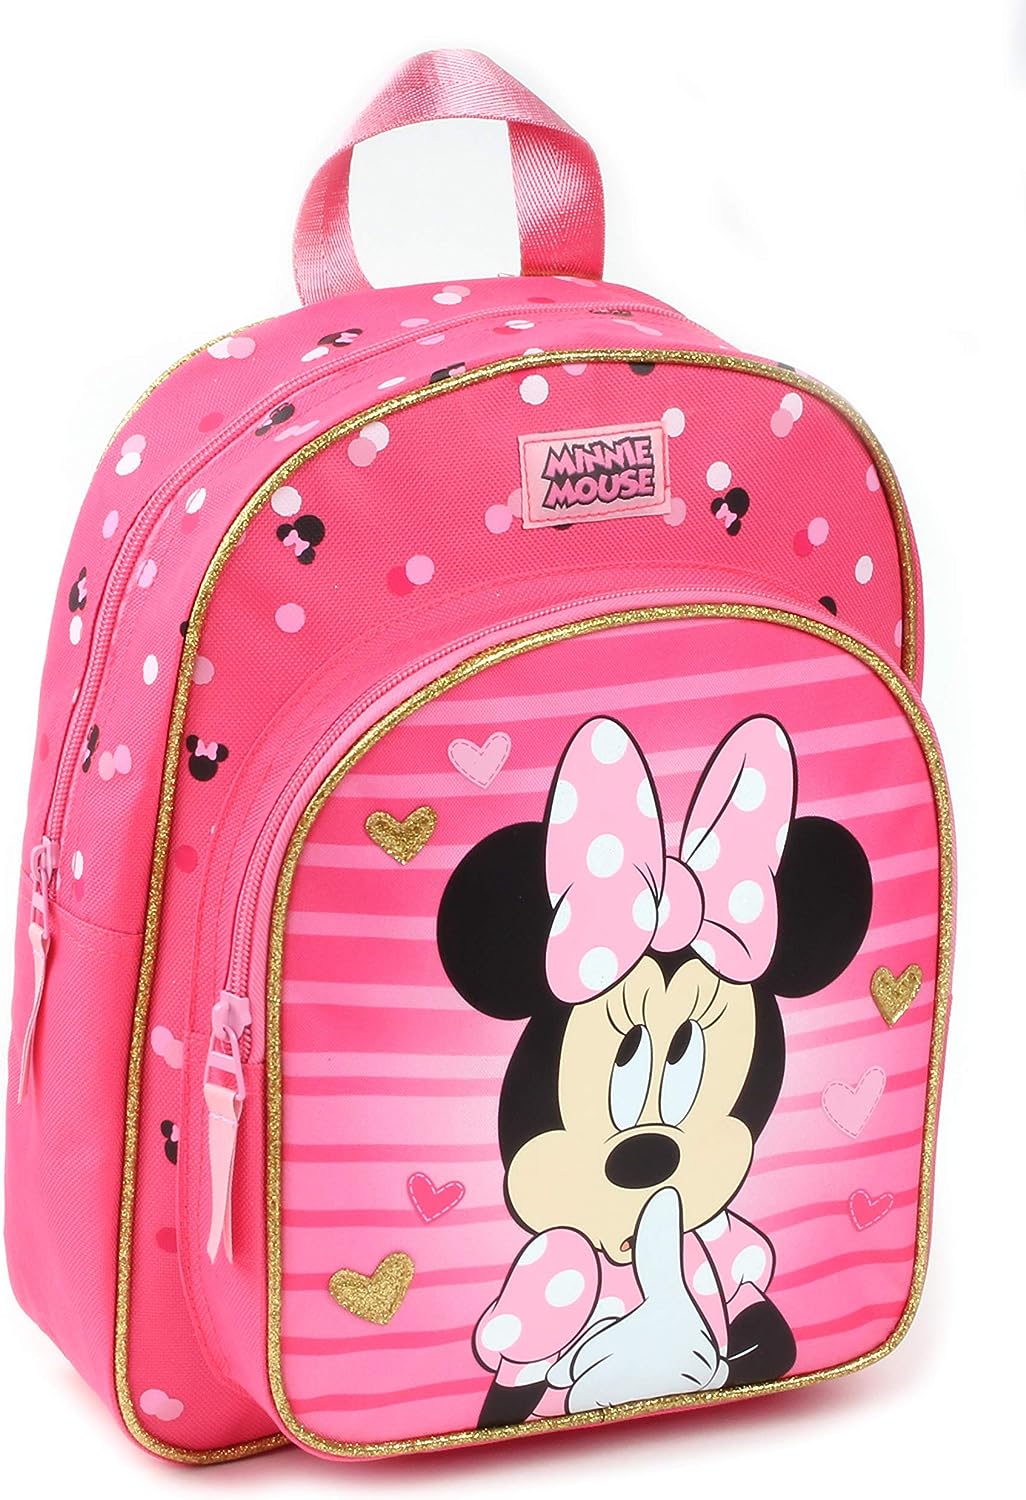 Mini sac à dos Maternelle Minnie Mouse 088-9583